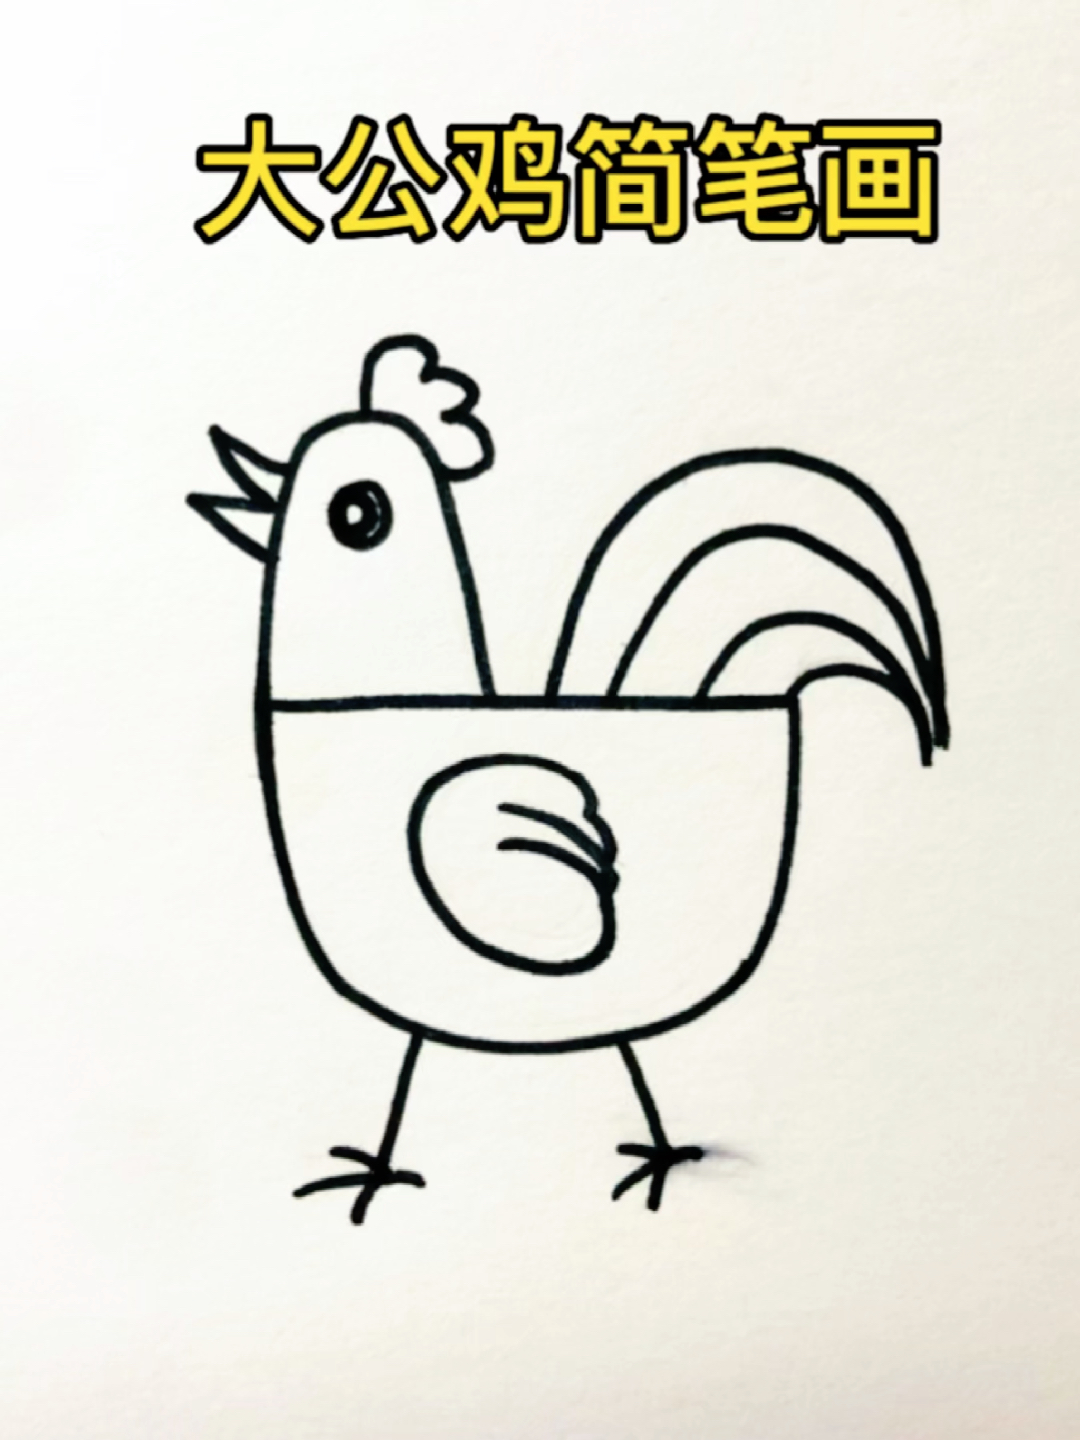 可爱大公鸡简笔画图片